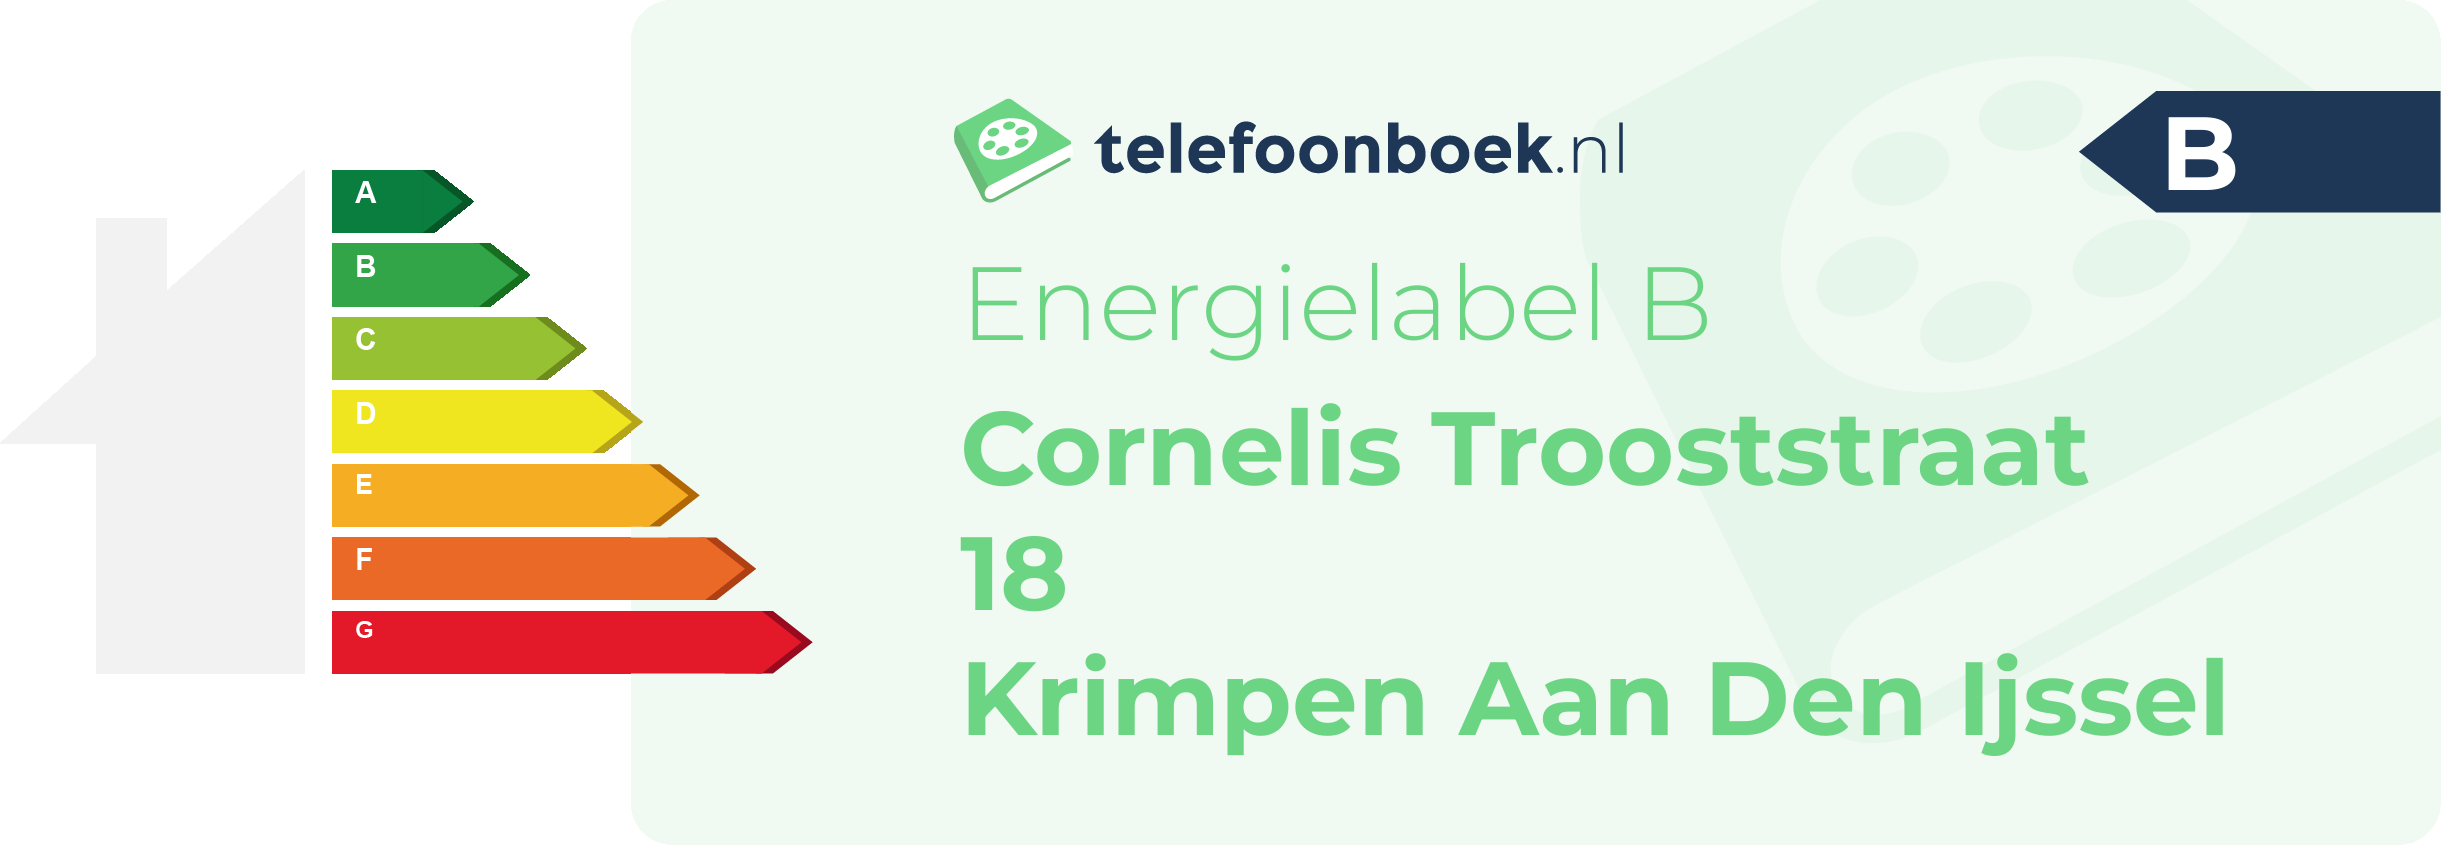 Energielabel Cornelis Trooststraat 18 Krimpen Aan Den Ijssel